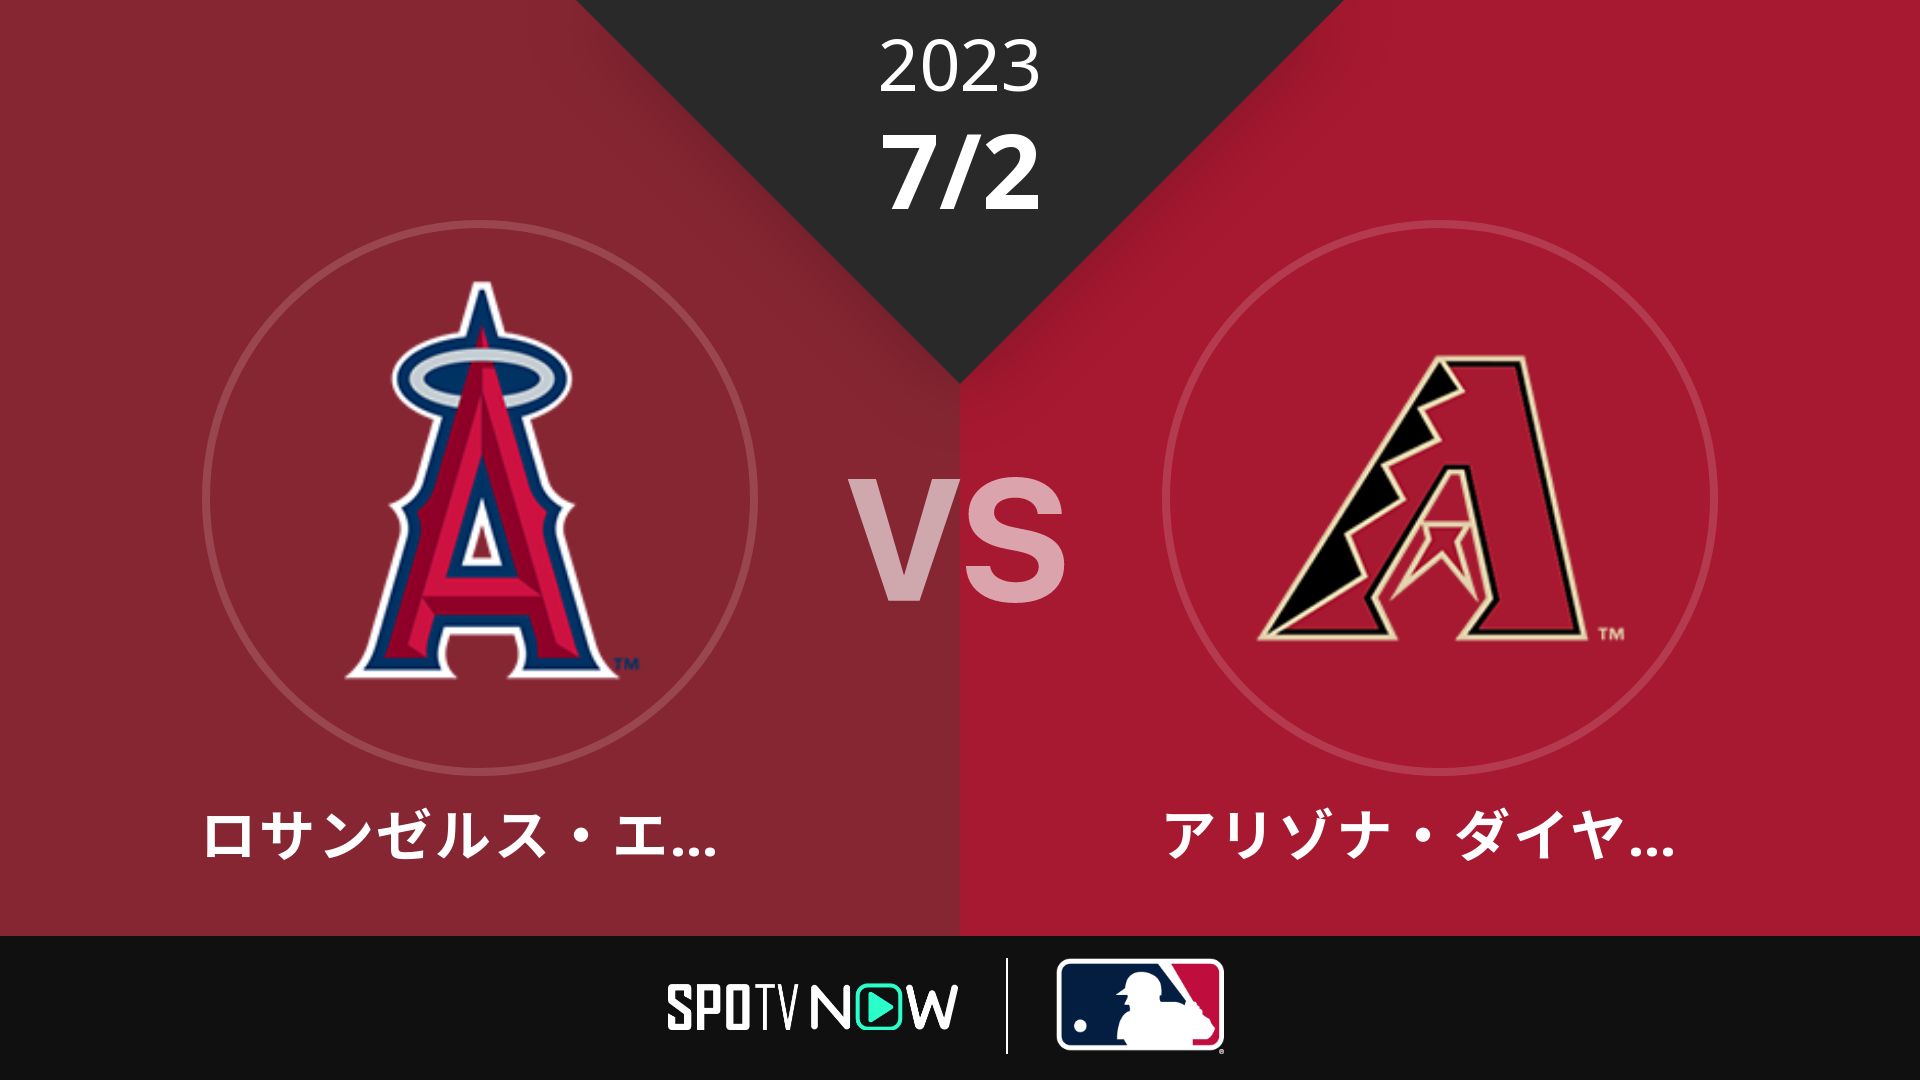 2023/7/2 エンゼルス vs Dバックス [MLB]